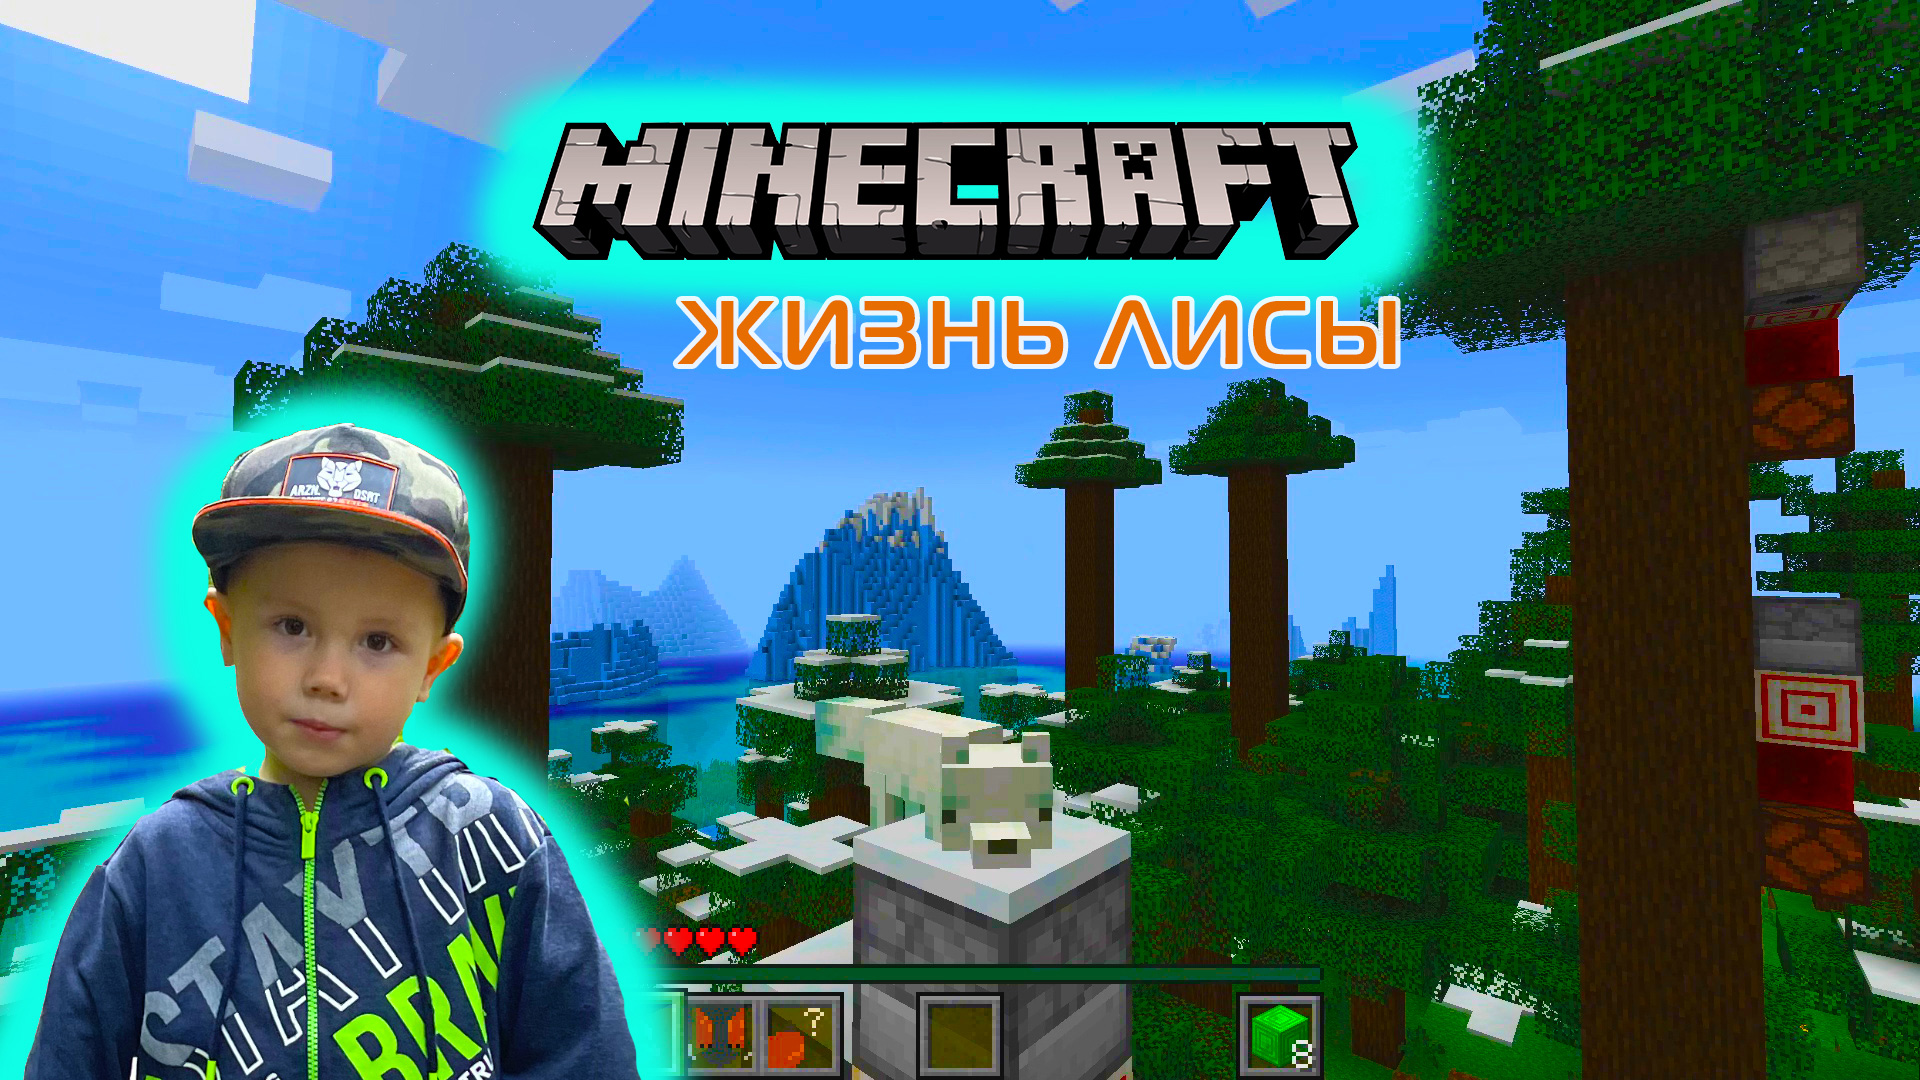 Minecraft A Fox's Life ➤ Игра Майнкрафт Жизнь Лисы ➤ Часть #1 ➤ Испытания с опасностями и квестами